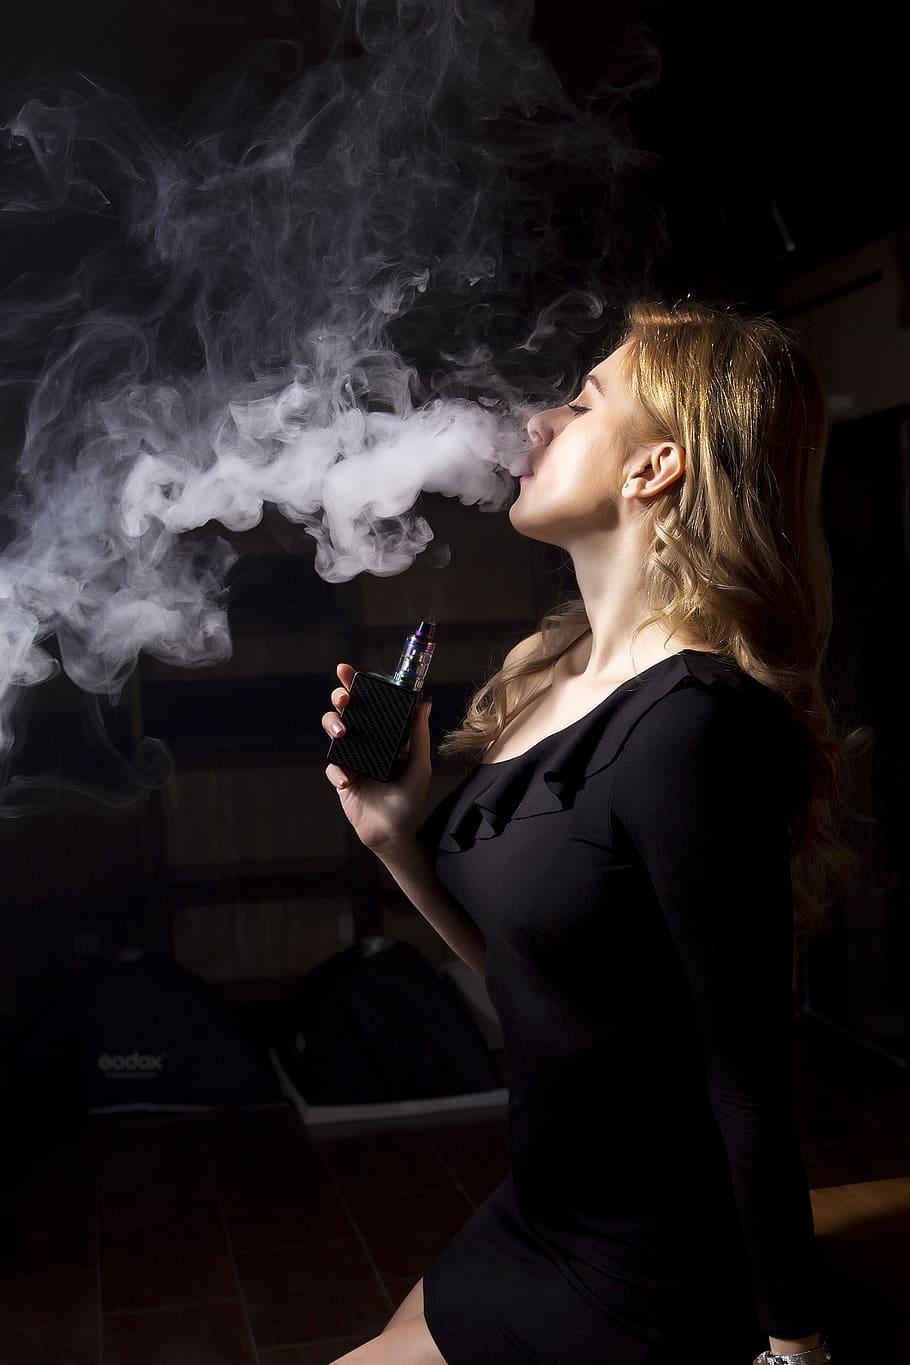 mulher, pessoas, fumaça, adulto, retrato, cigarro eletrônico, vapor, vaping, uwell, vista lateral